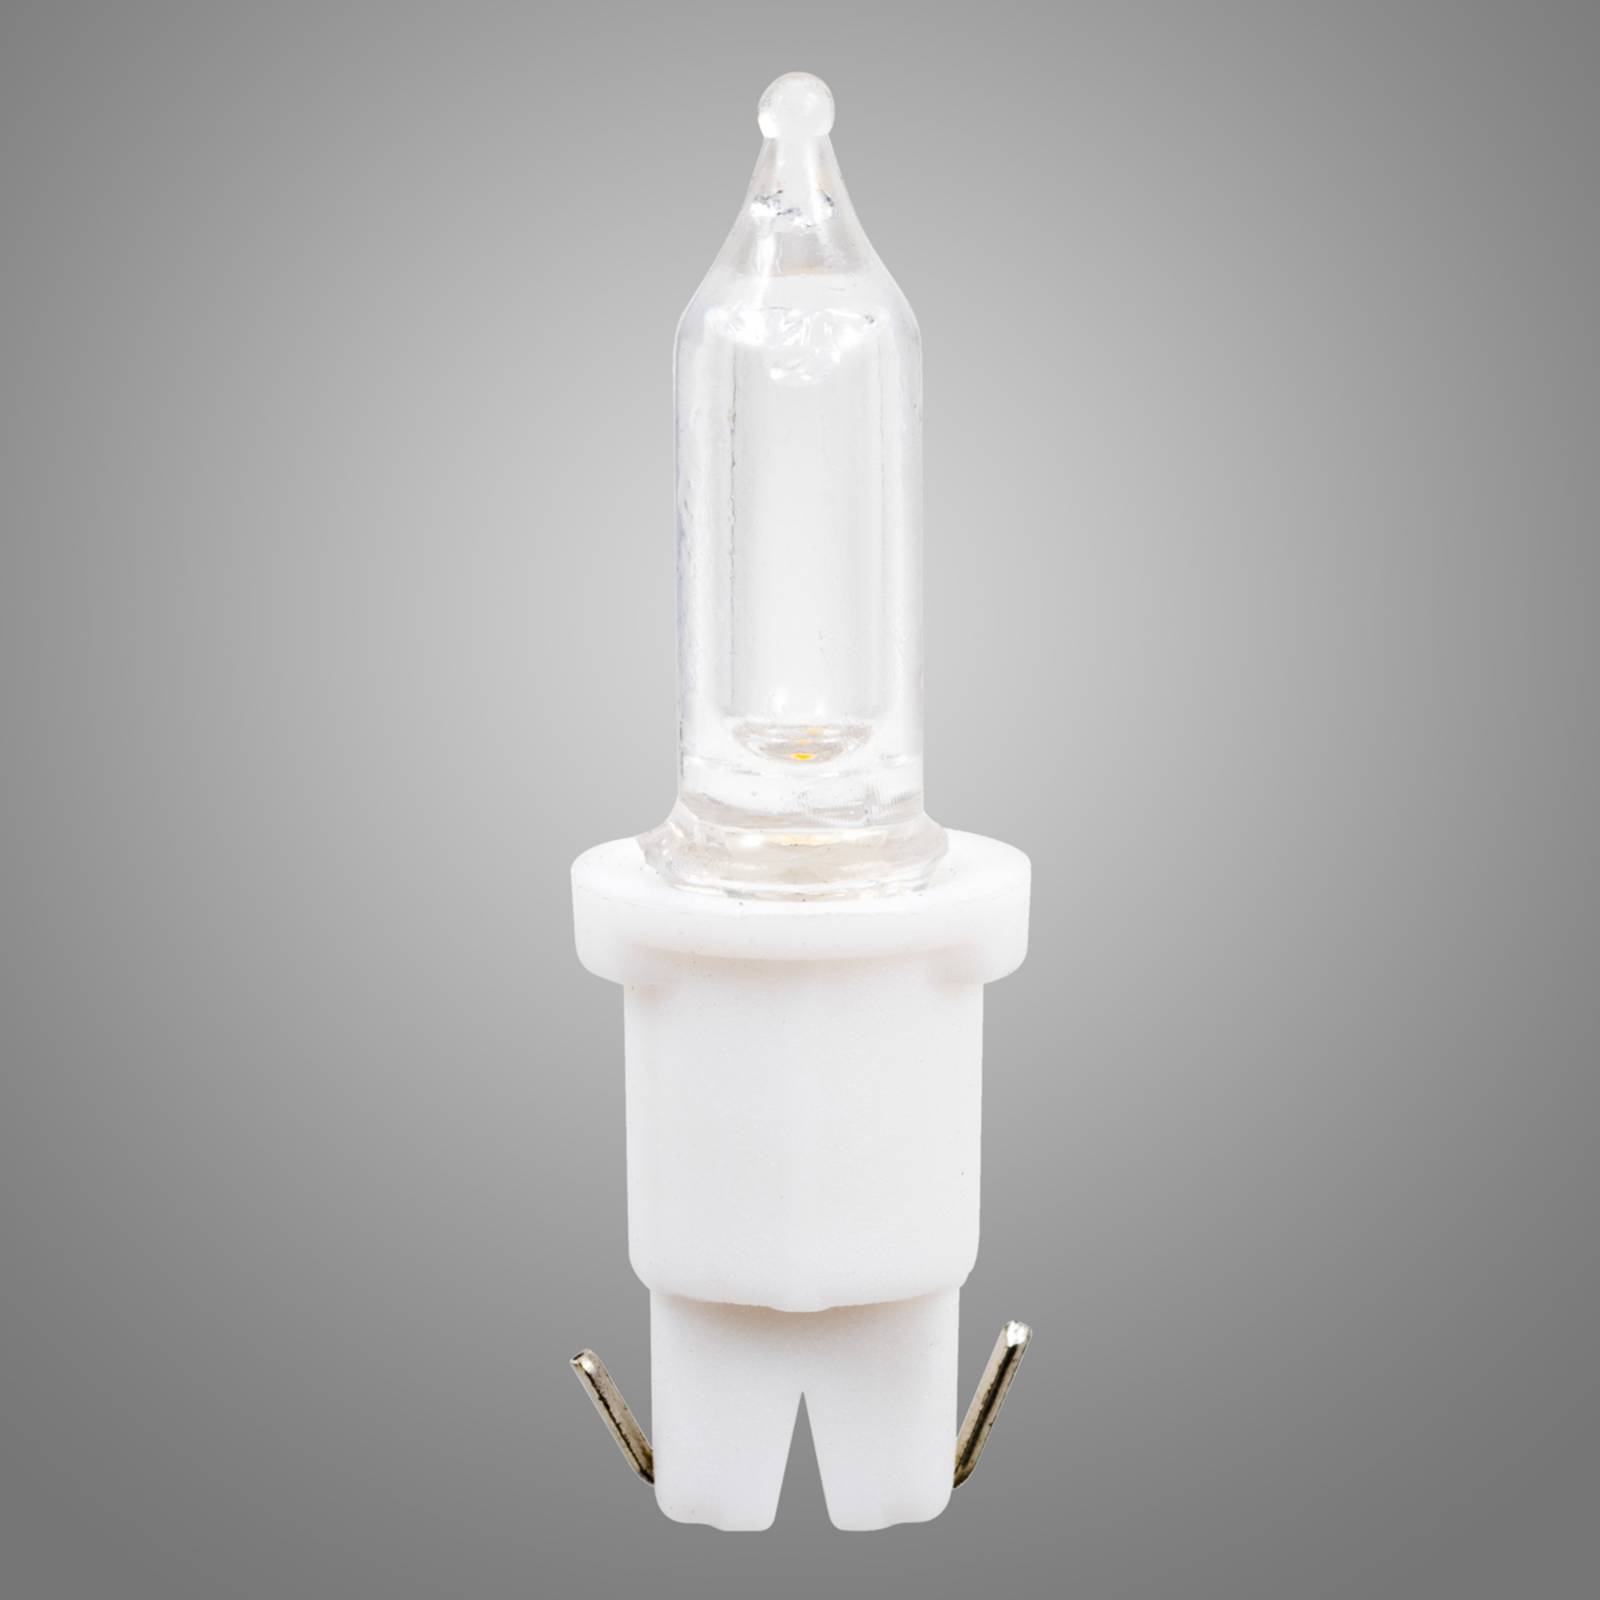 3V 0,06W LED Push-in-náhradná žiarovka súprava 3ks